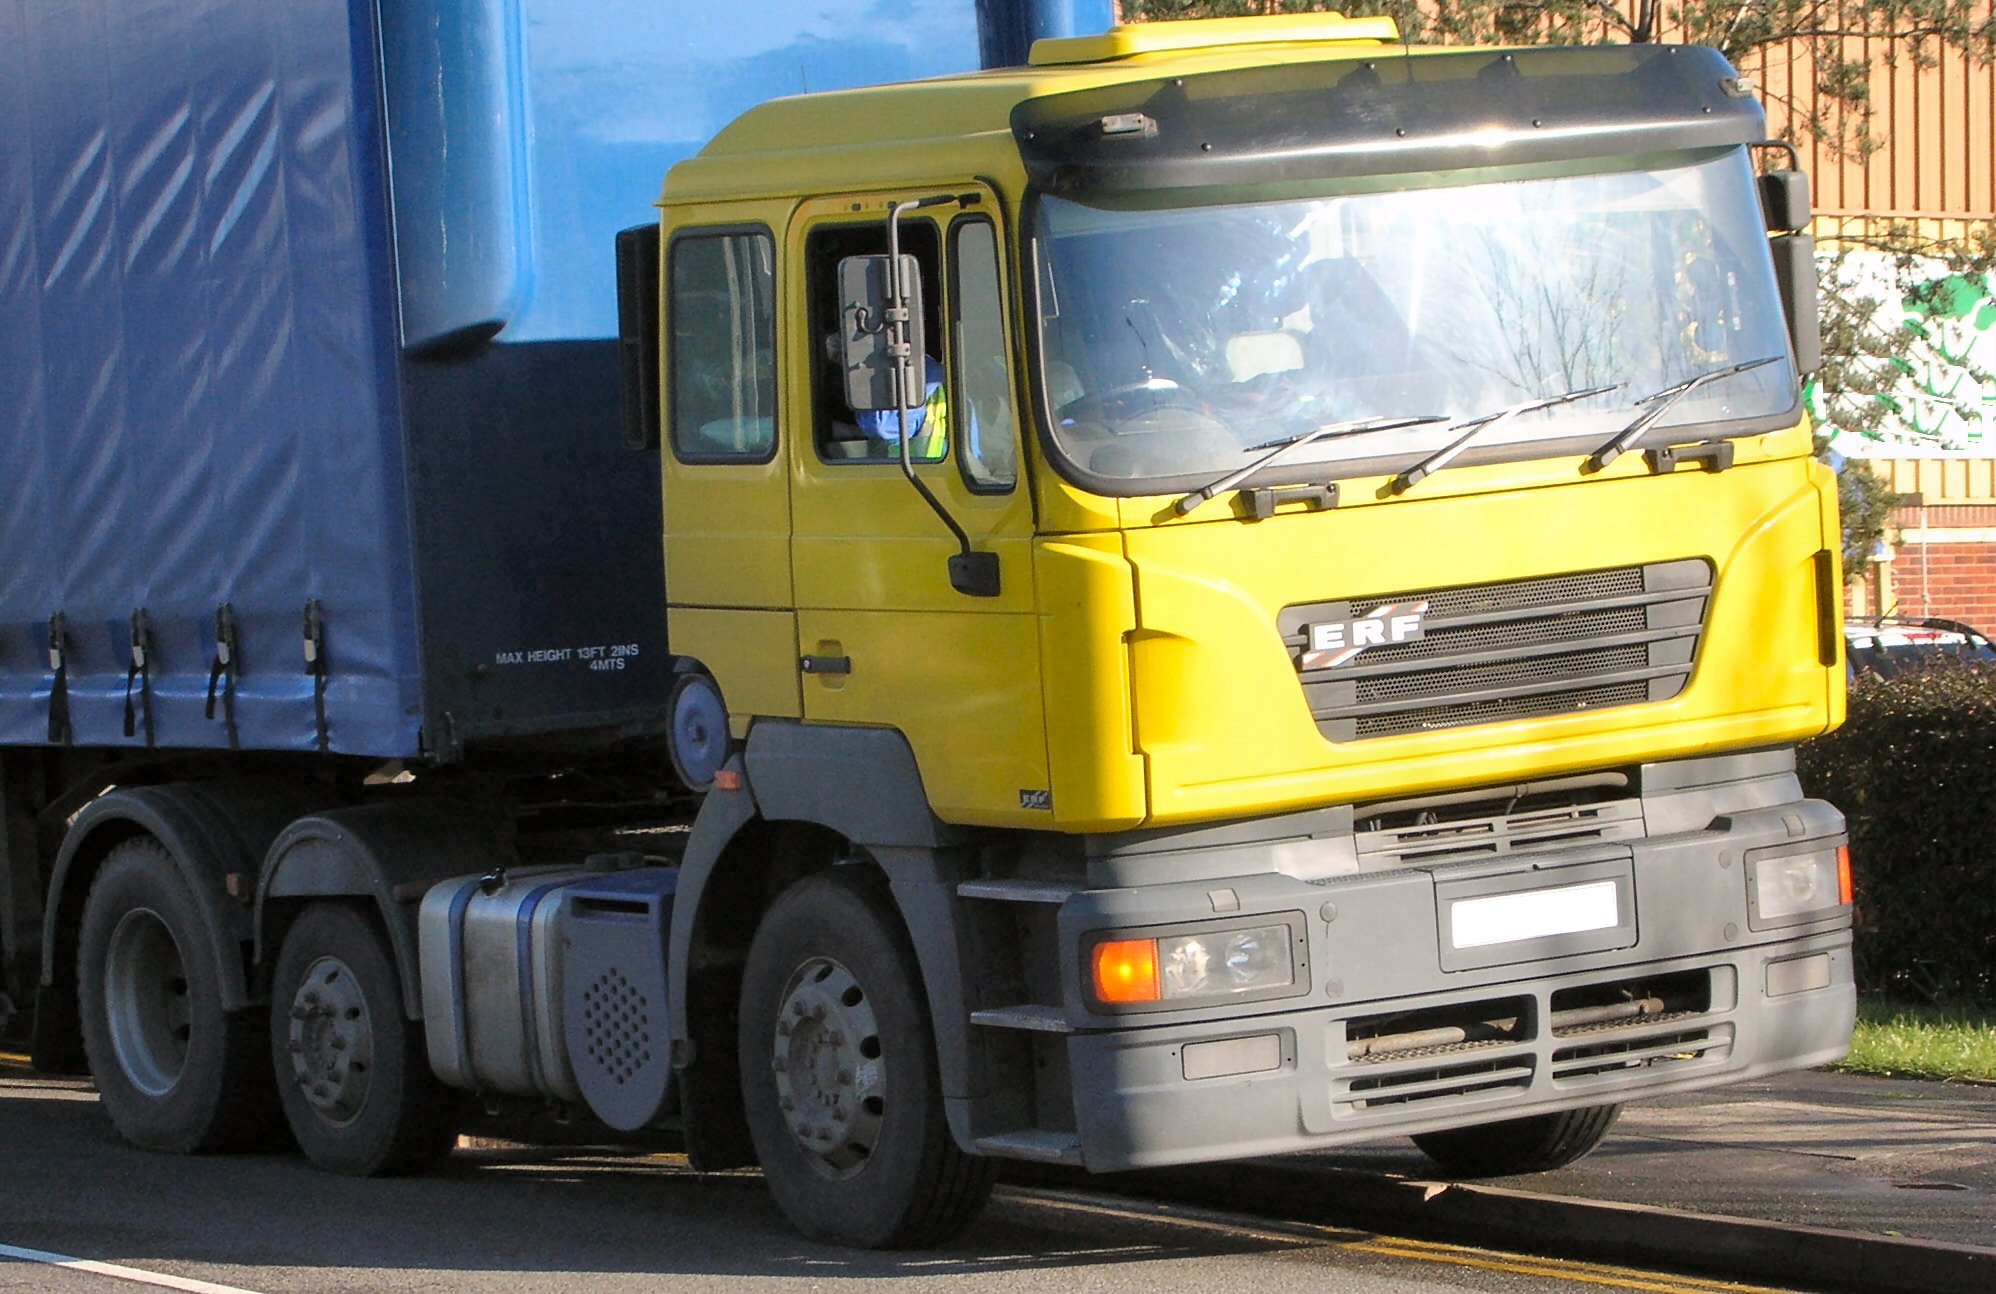 Revisioni camion e autobus: slitta l'entrata in vigore delle nuove regole